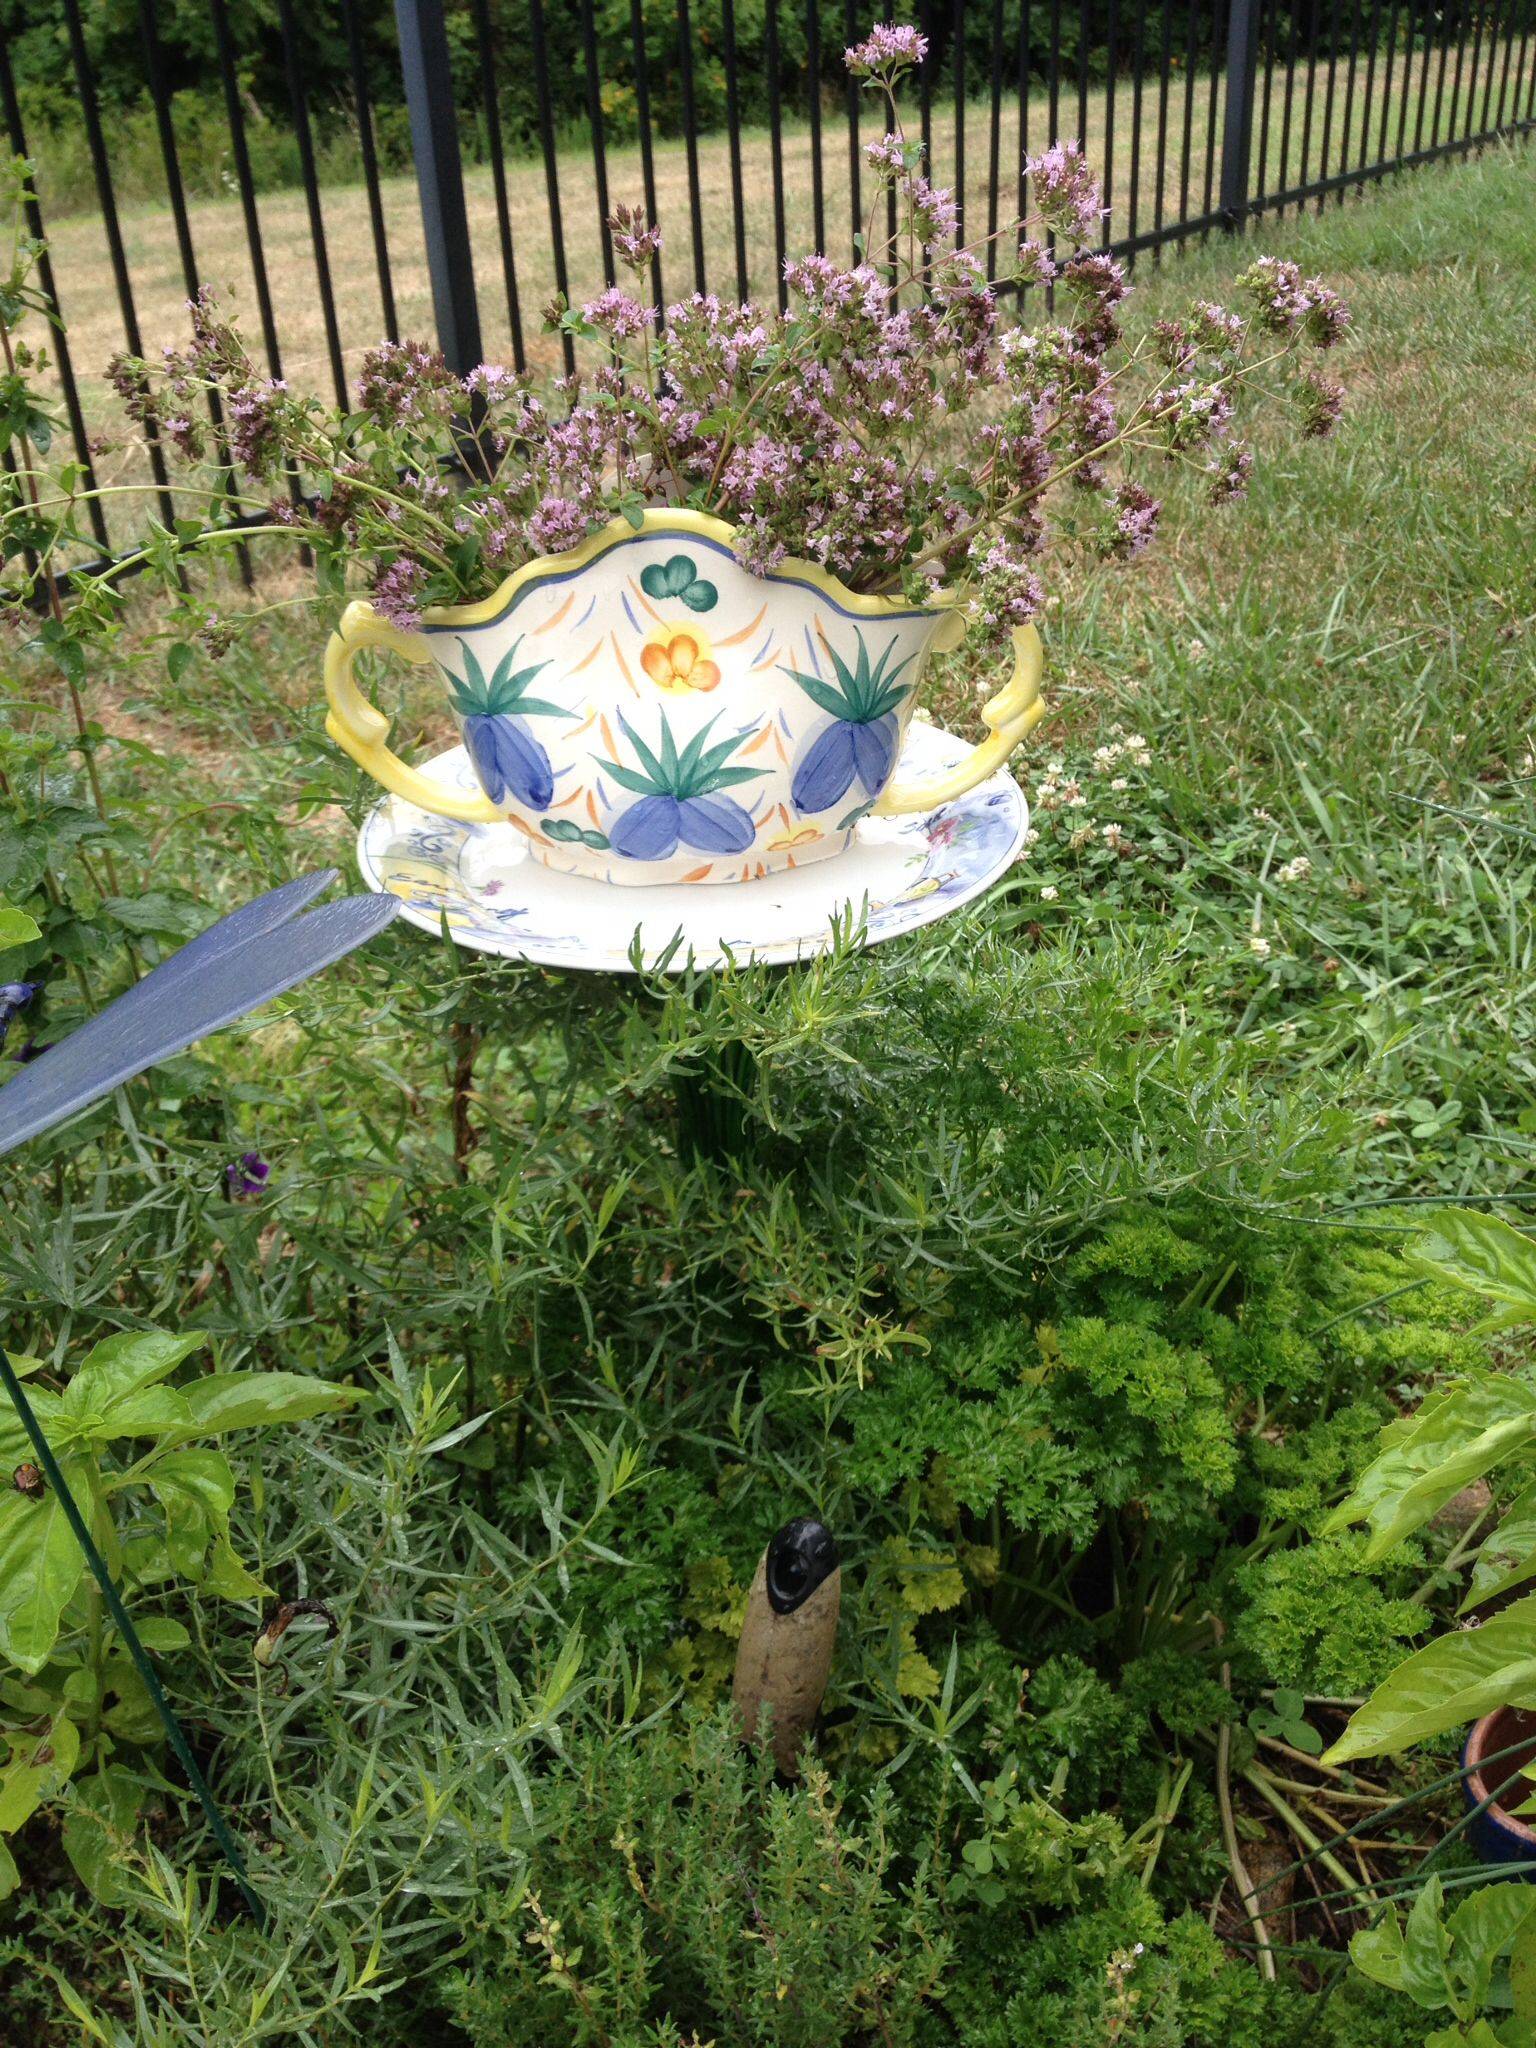 Repurposed Plate Flower Glass Garden Art Glass Flower Yard Etsy